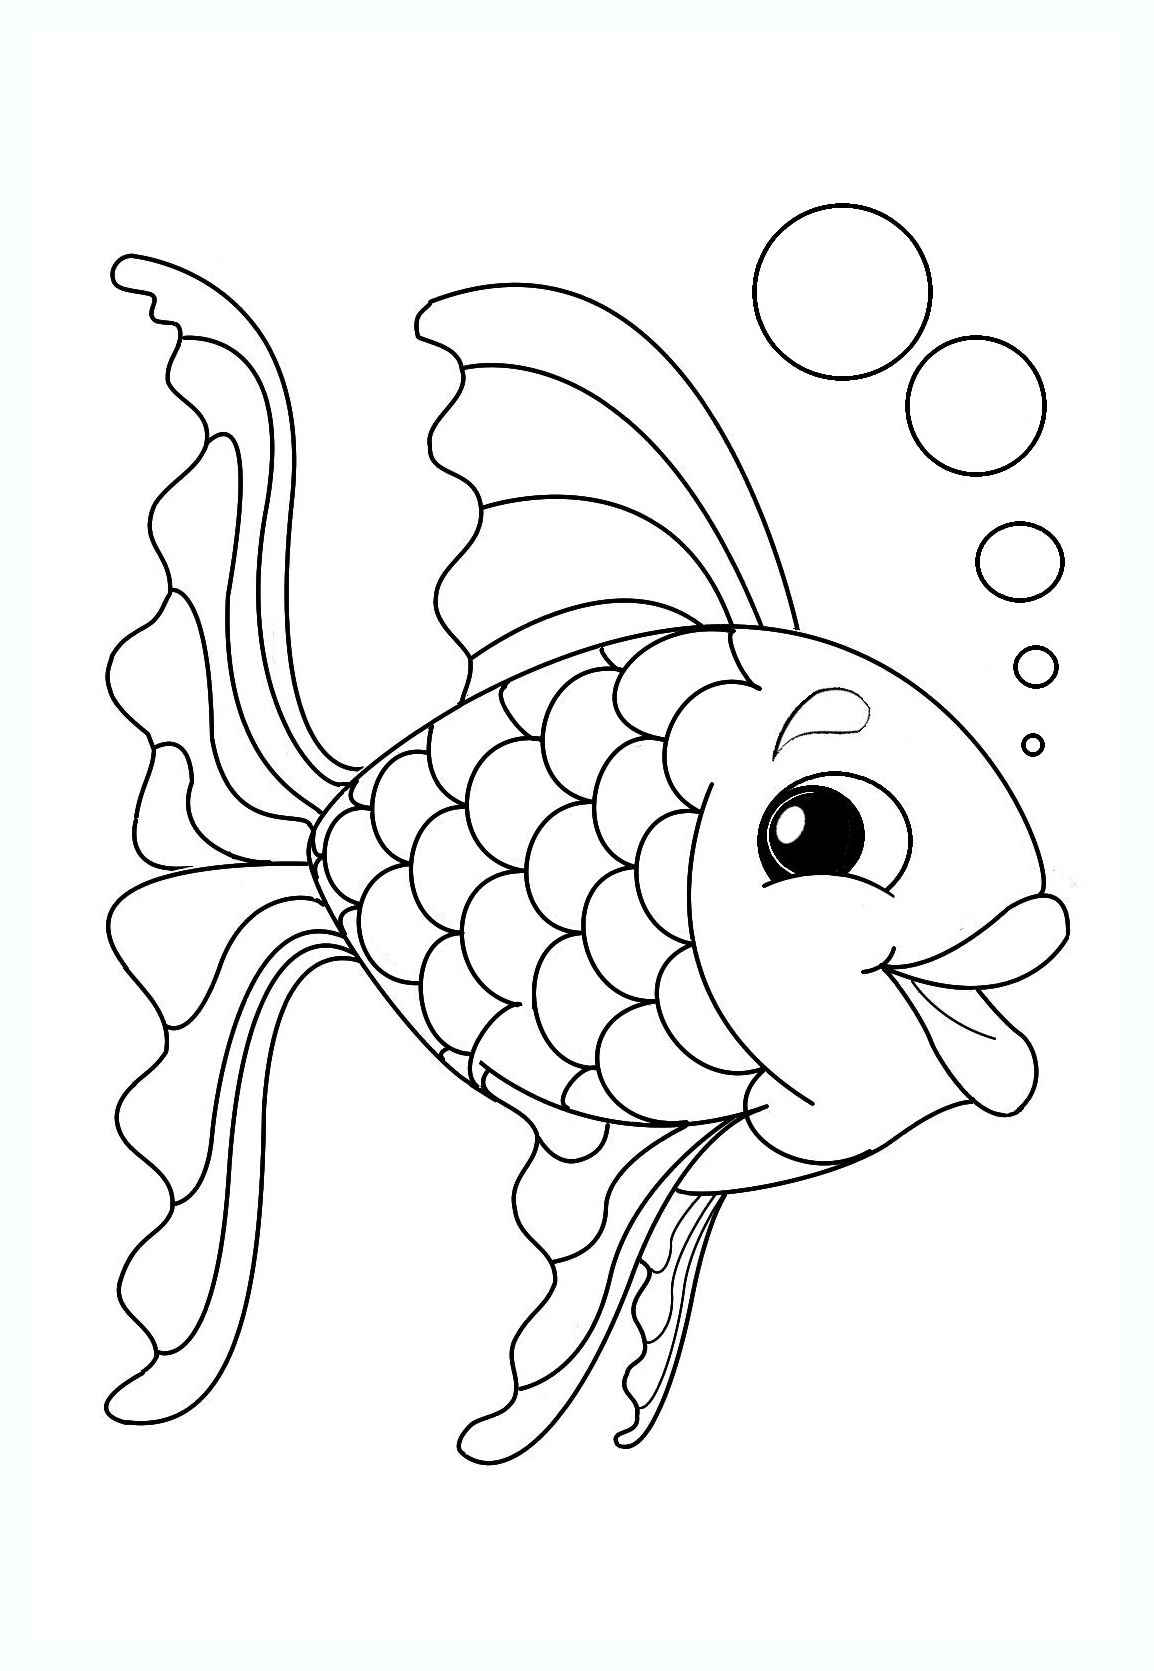 Un poisson avec de belles écailles